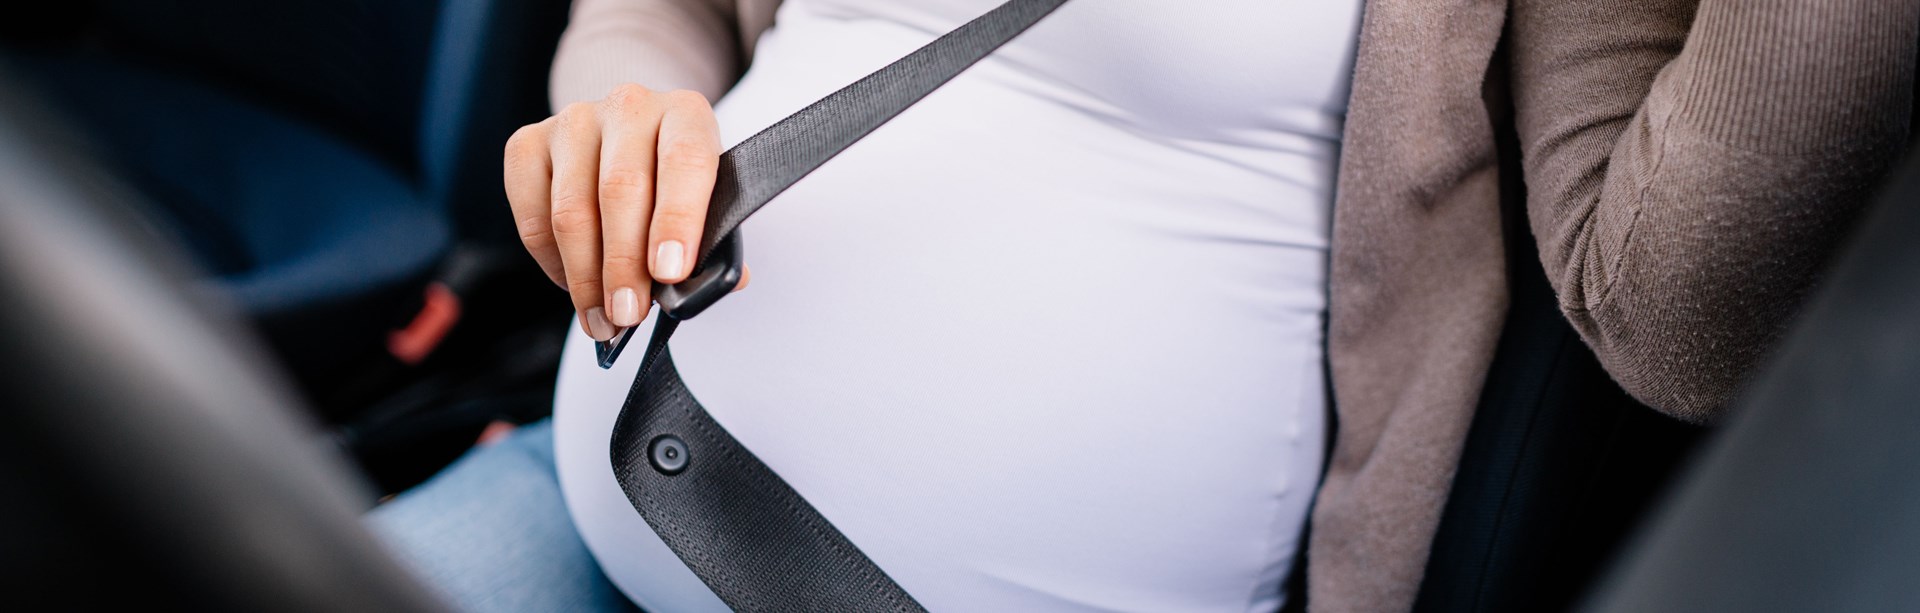 M Sverige: 4 av 10 gravida använder bilbältet fel